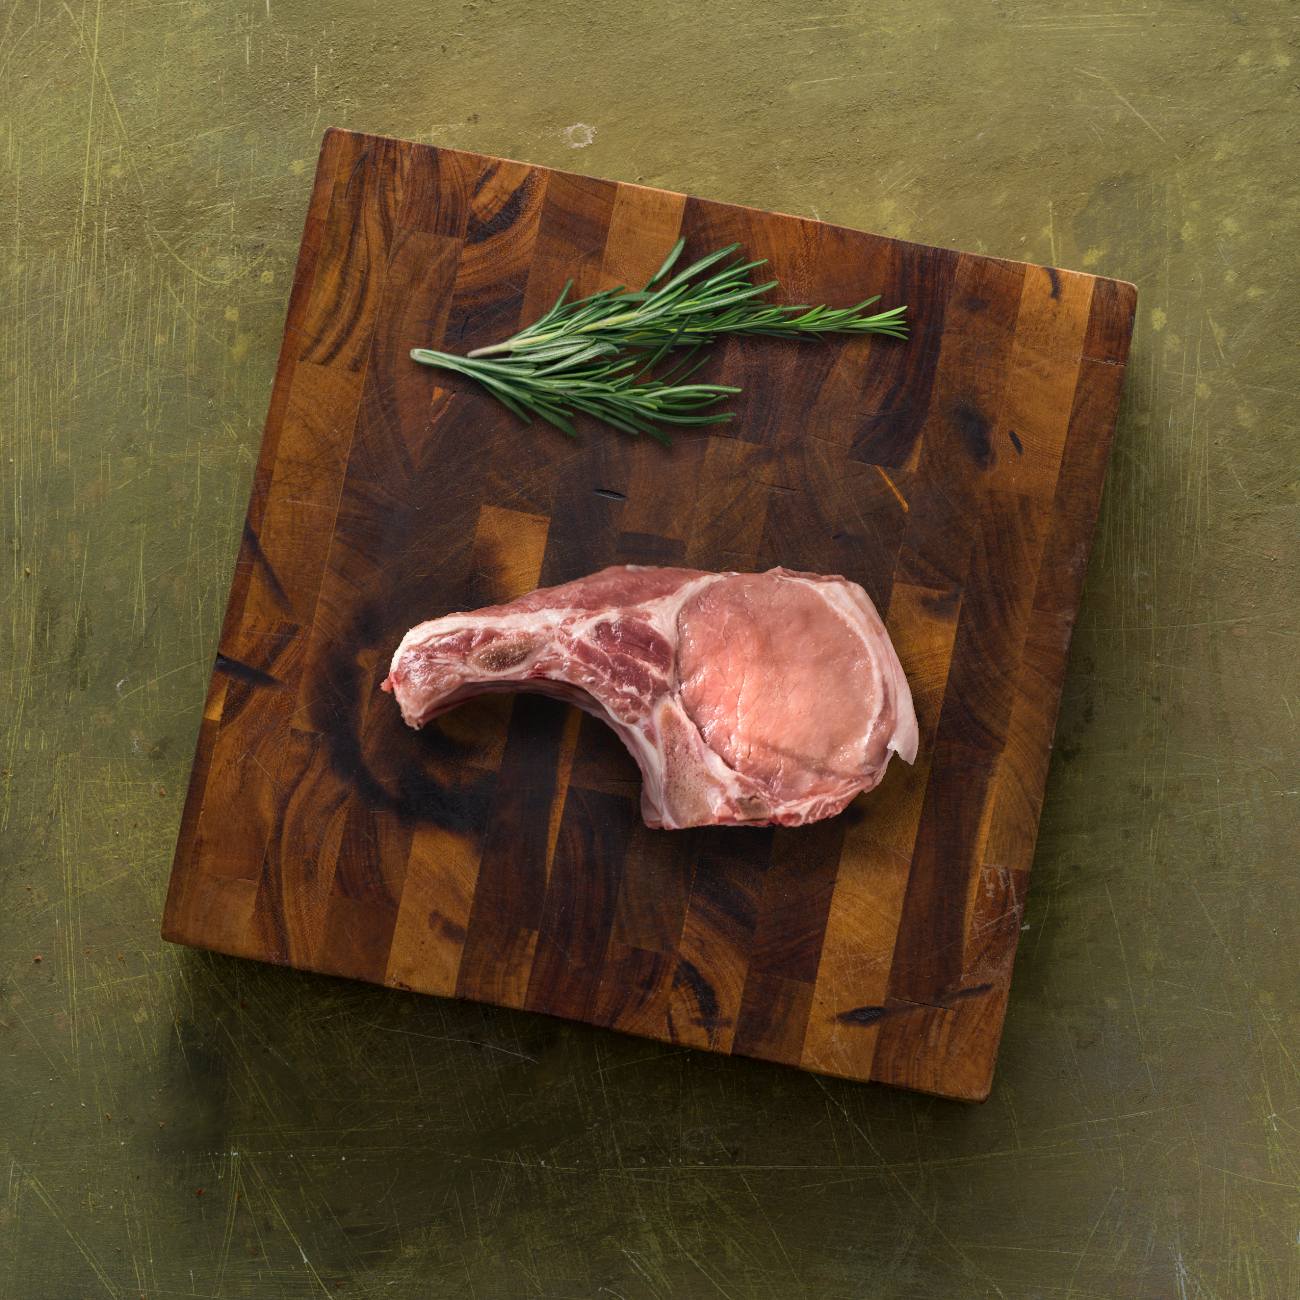 Pastured Bone-In Center Cut Pork Chop